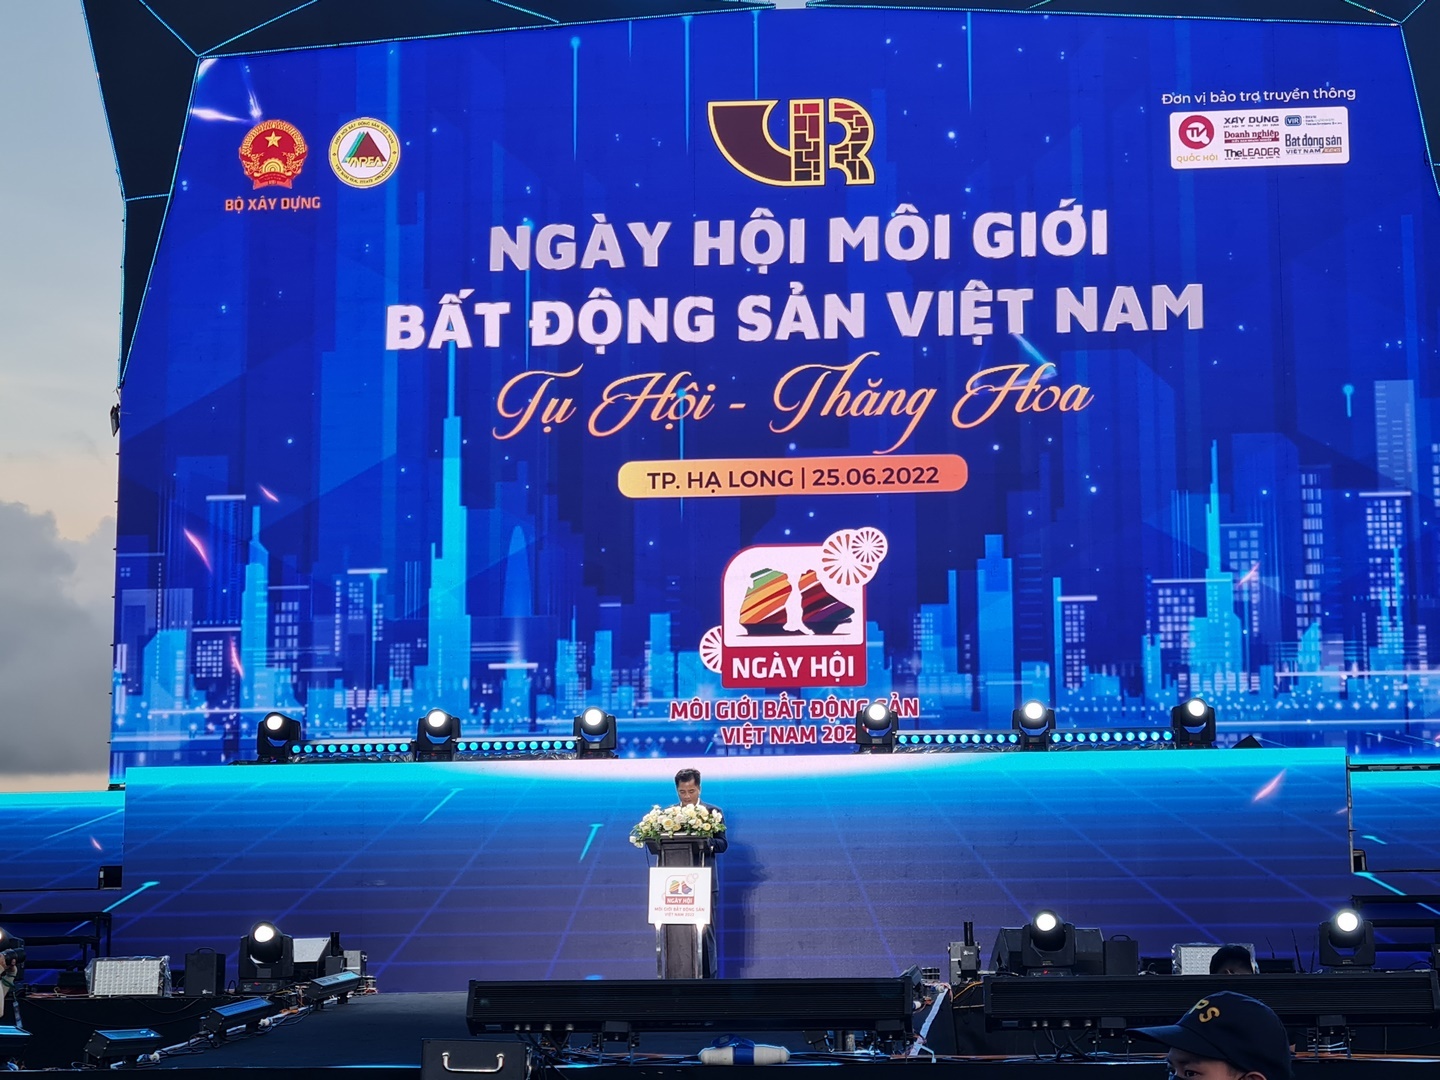 Tưng bừng Ngày hội môi giới bất động sản Việt Nam năm 2022